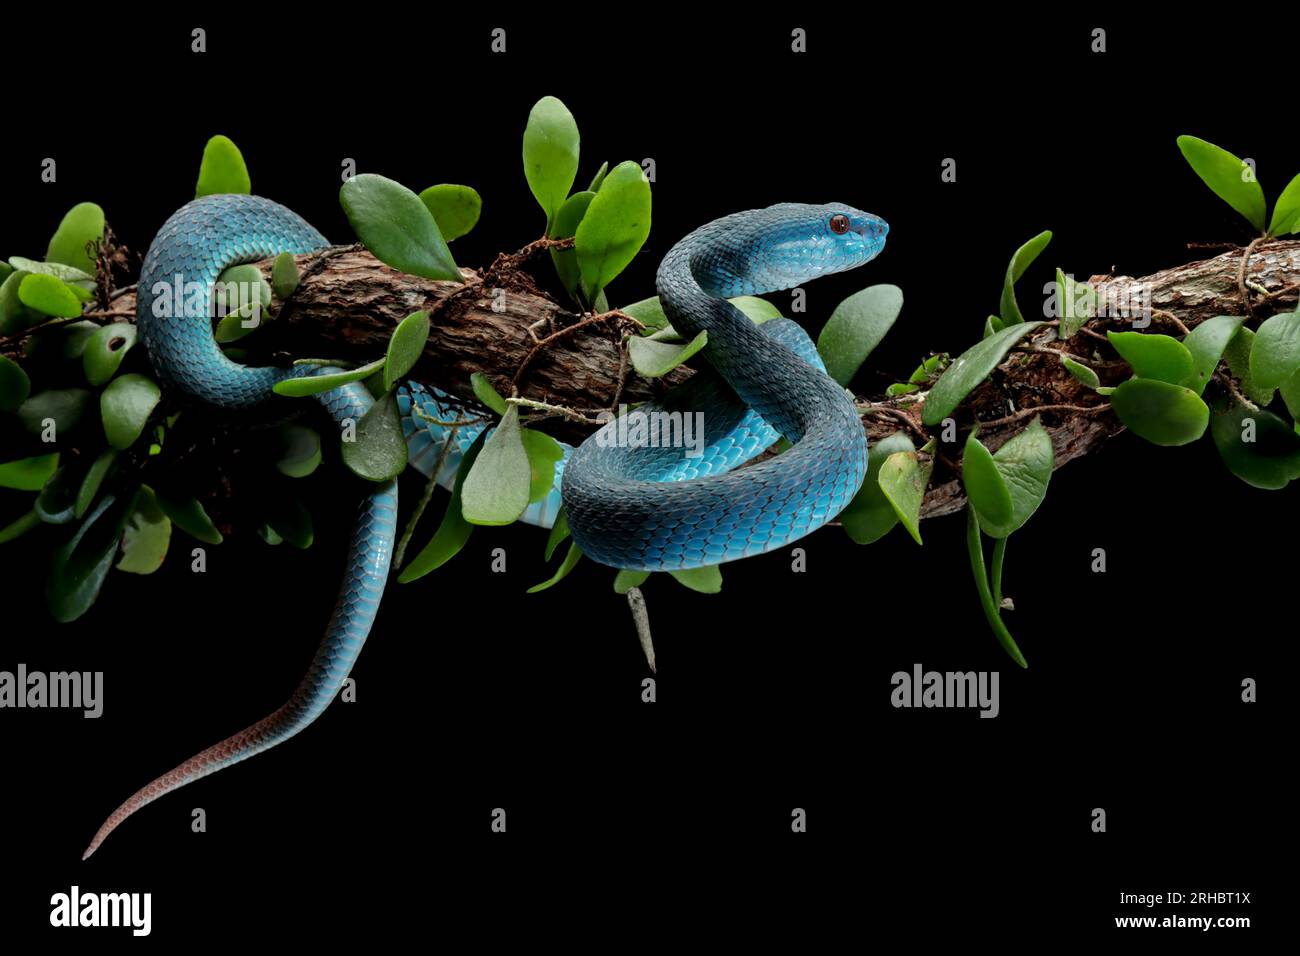 Gros plan d'un serpent à vipère bleu enroulé autour d'une branche, l'Indonésie Banque D'Images